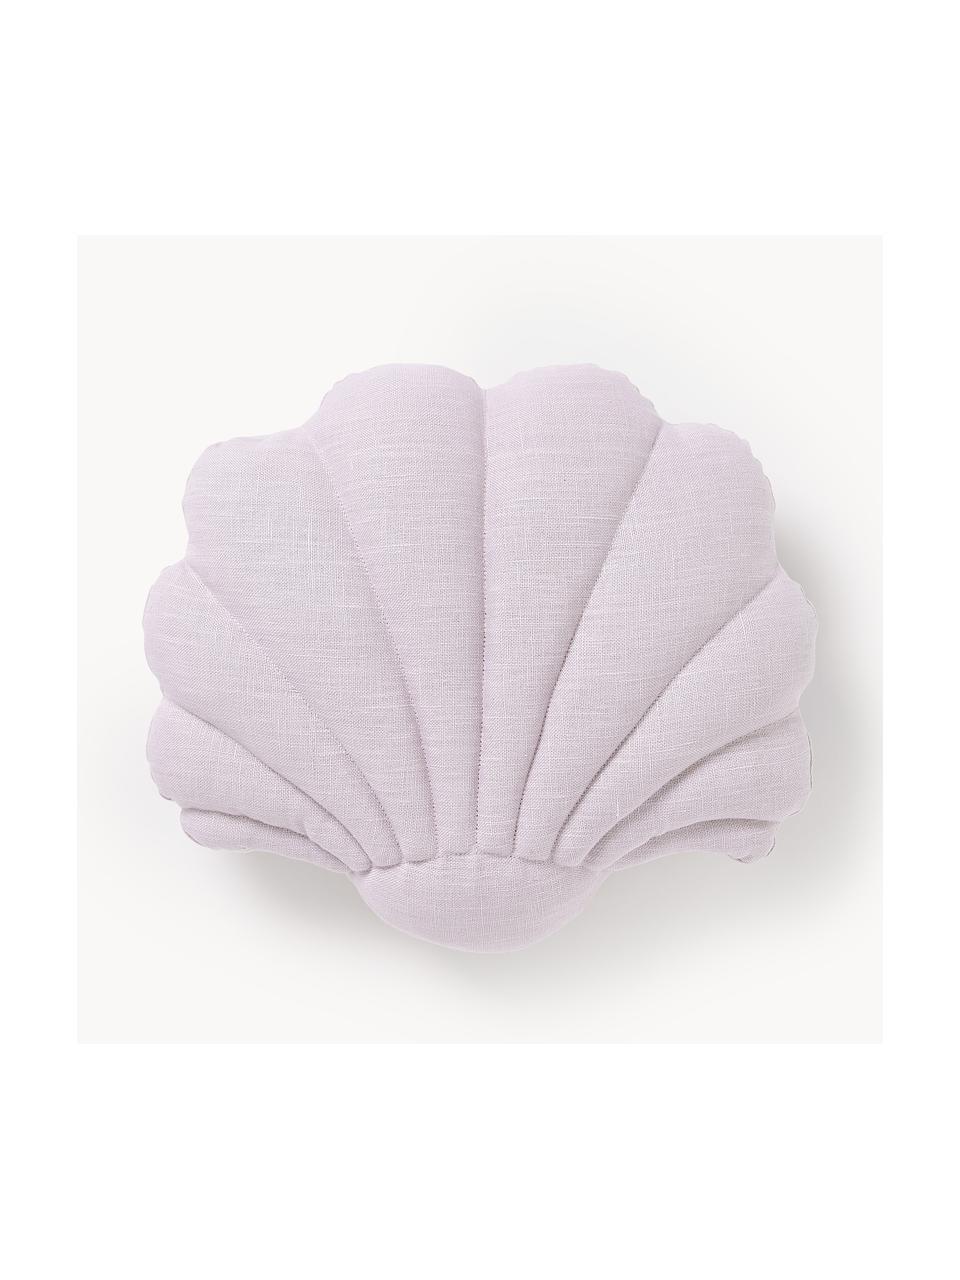 Leinen-Kissen Shell in Muschelform, Vorderseite: 100 % Leinen, Rückseite: 100 % Baumwolle, Lavendel, B 34 x L 38 cm